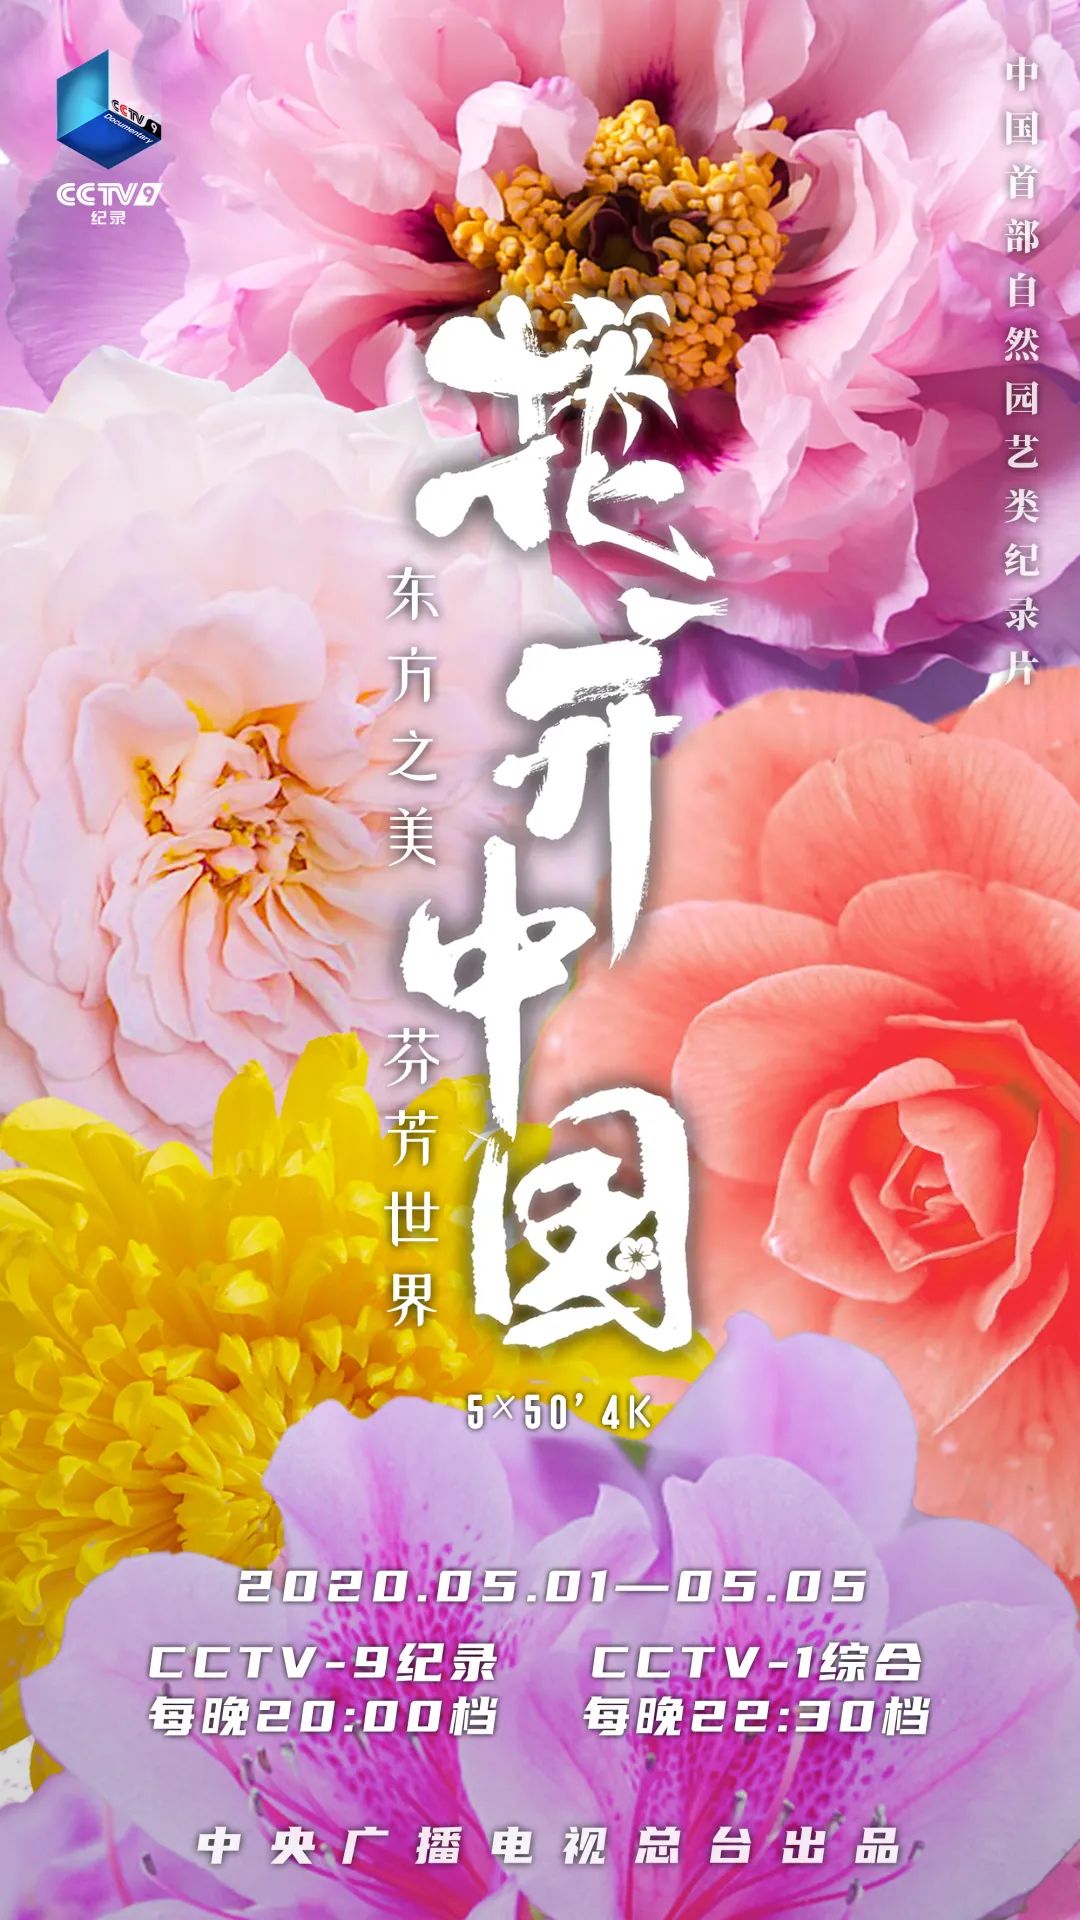 大型自然園藝類紀錄片《花開中國》五一假期隆重開播